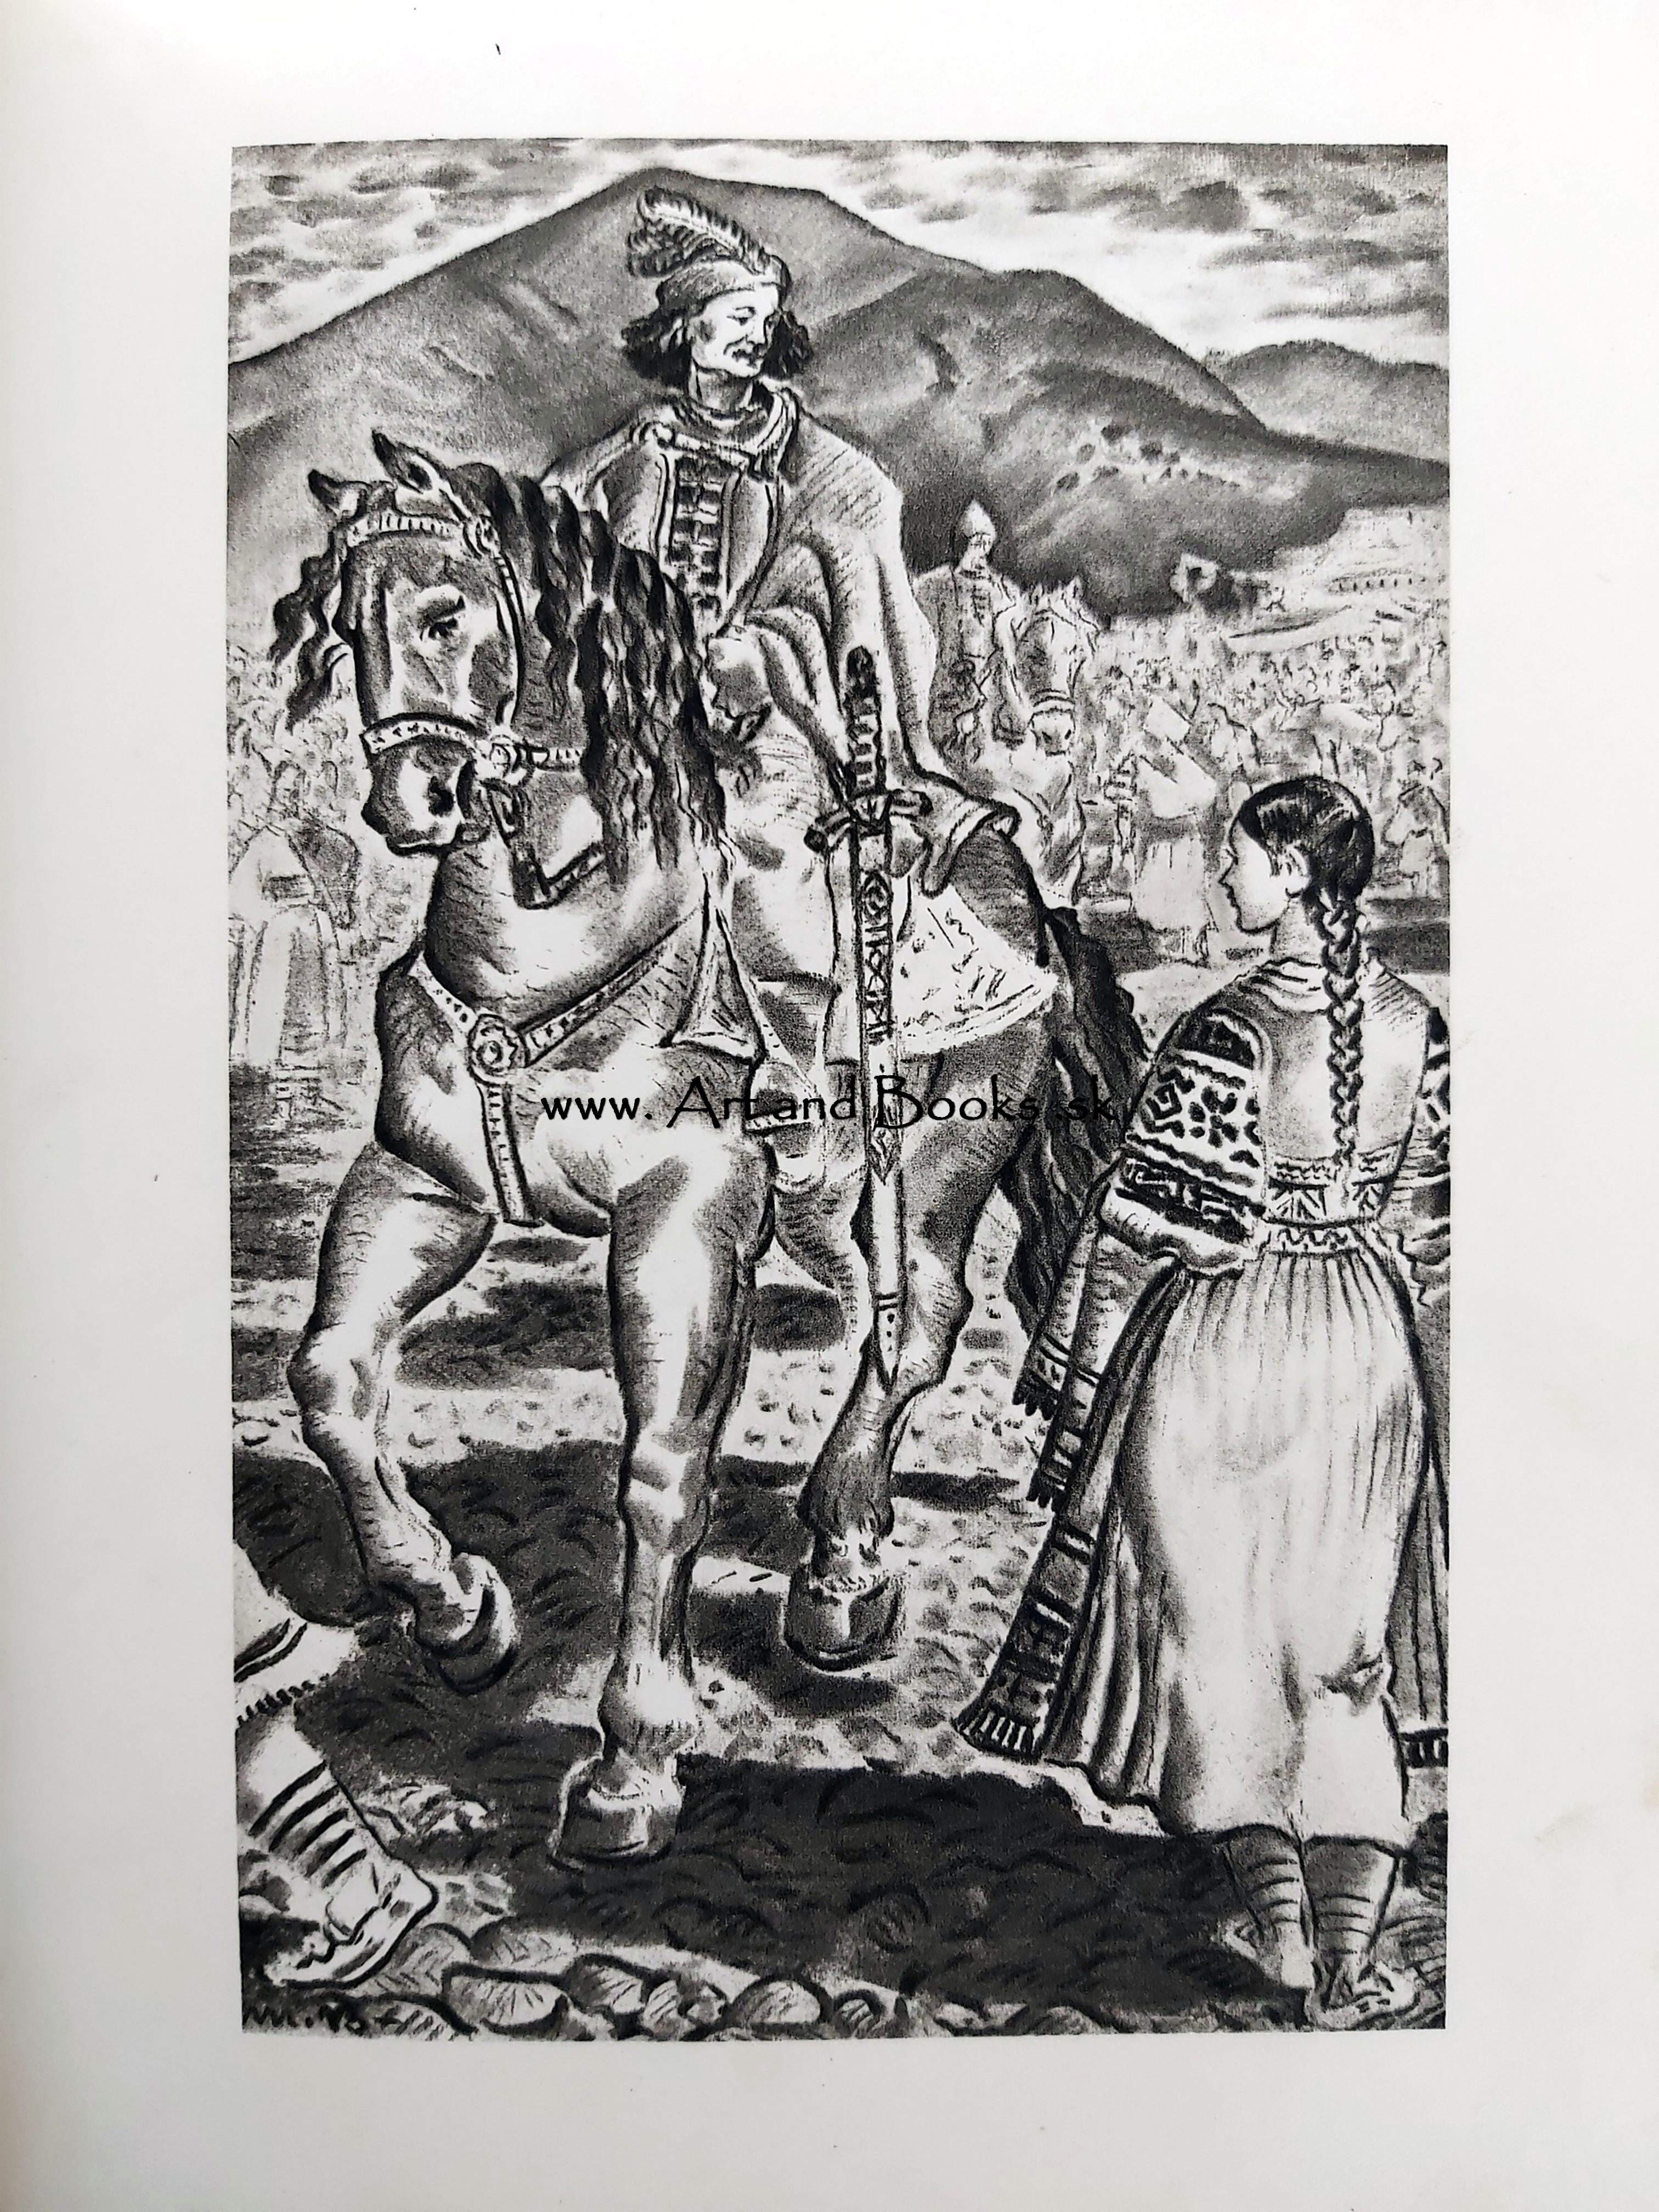 Andrej Sládkovič - Detvan (1943)	(sold/predané) ●	161753